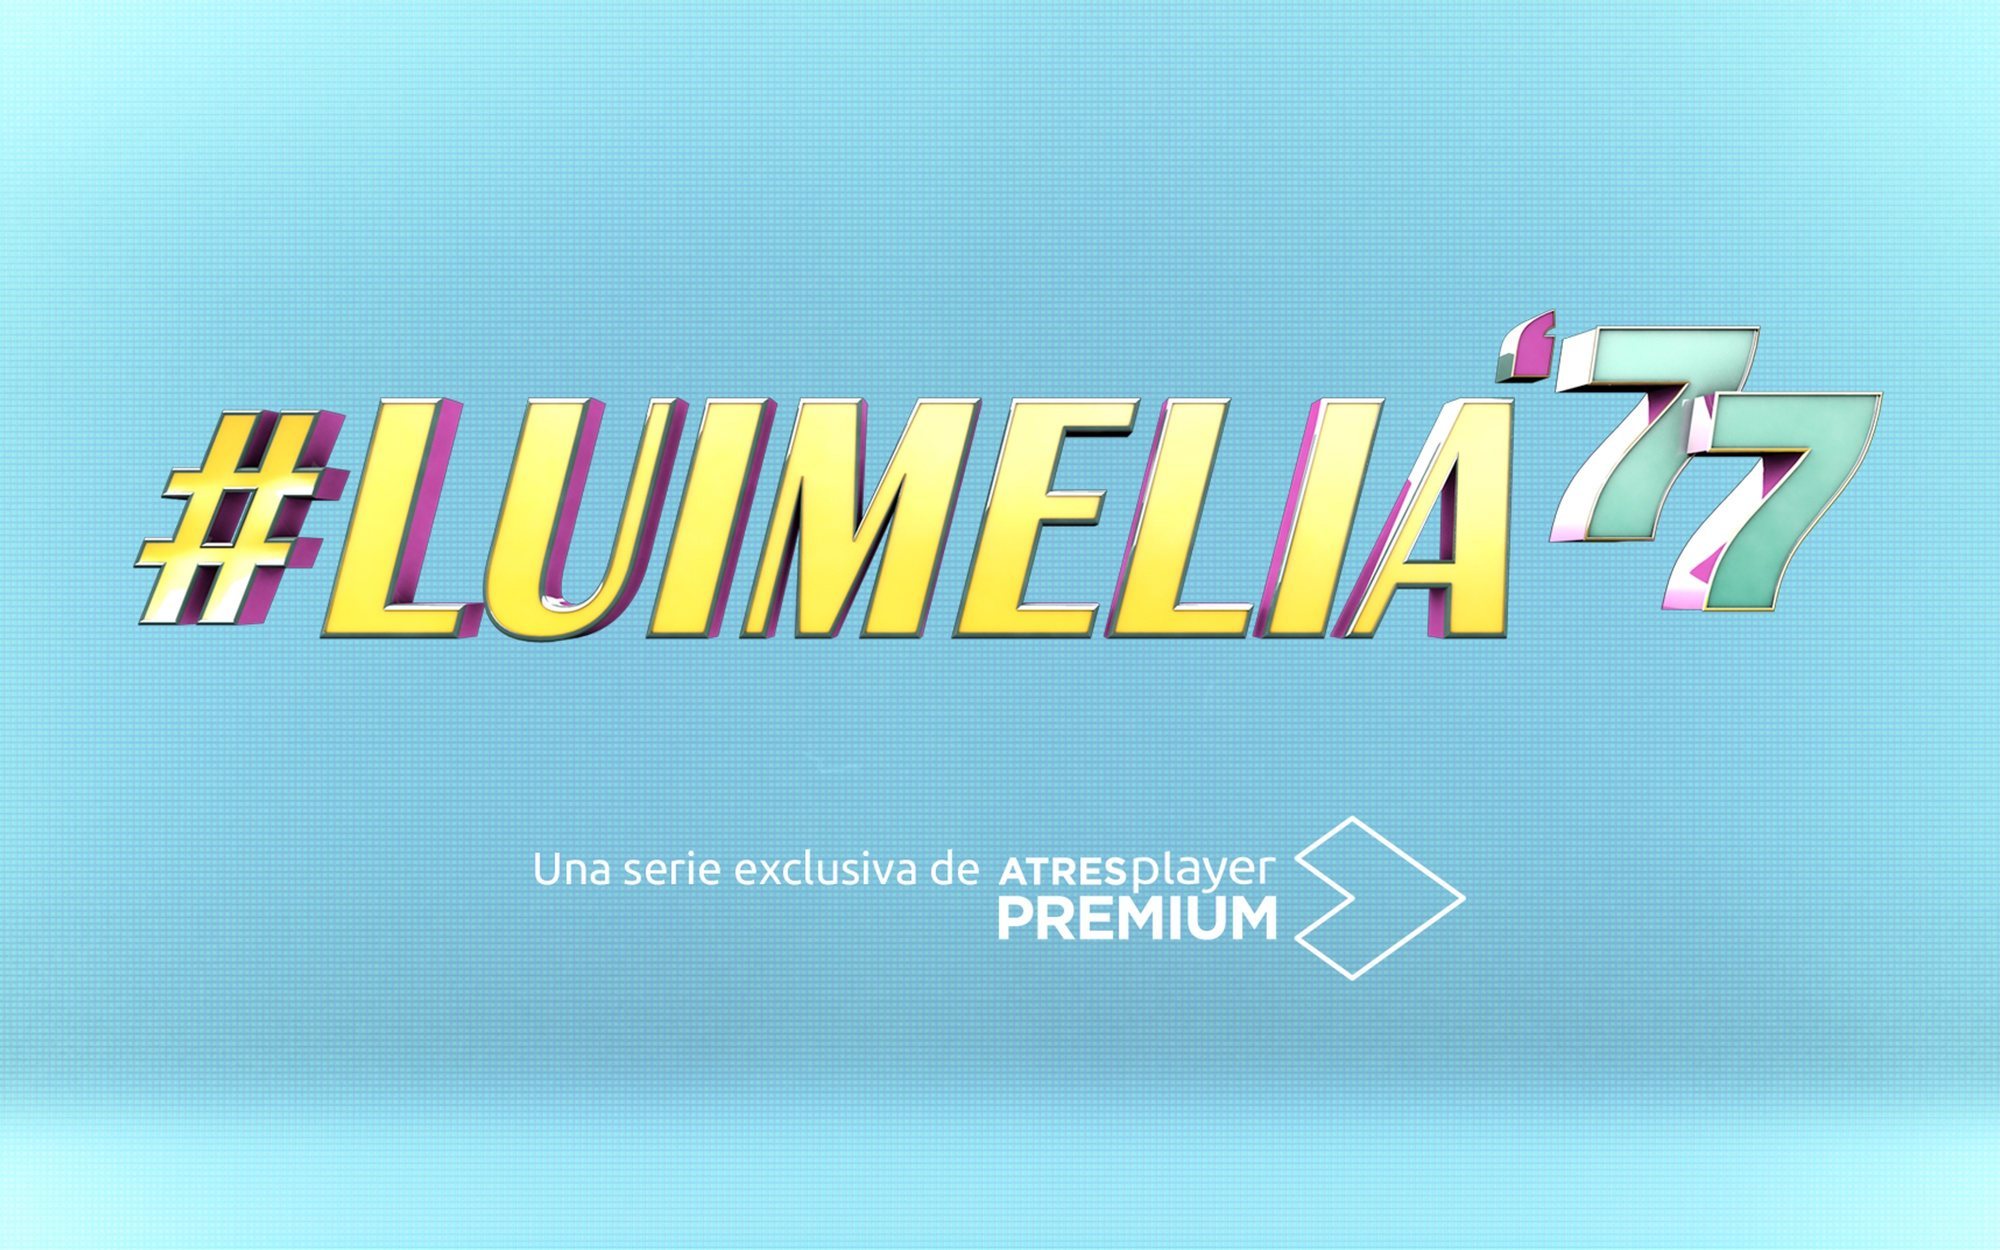 '#Luimelia 77', el nuevo montaje de la historia de Luisita y Amelia, llega el 22 de noviembre a Atresplayer Premium